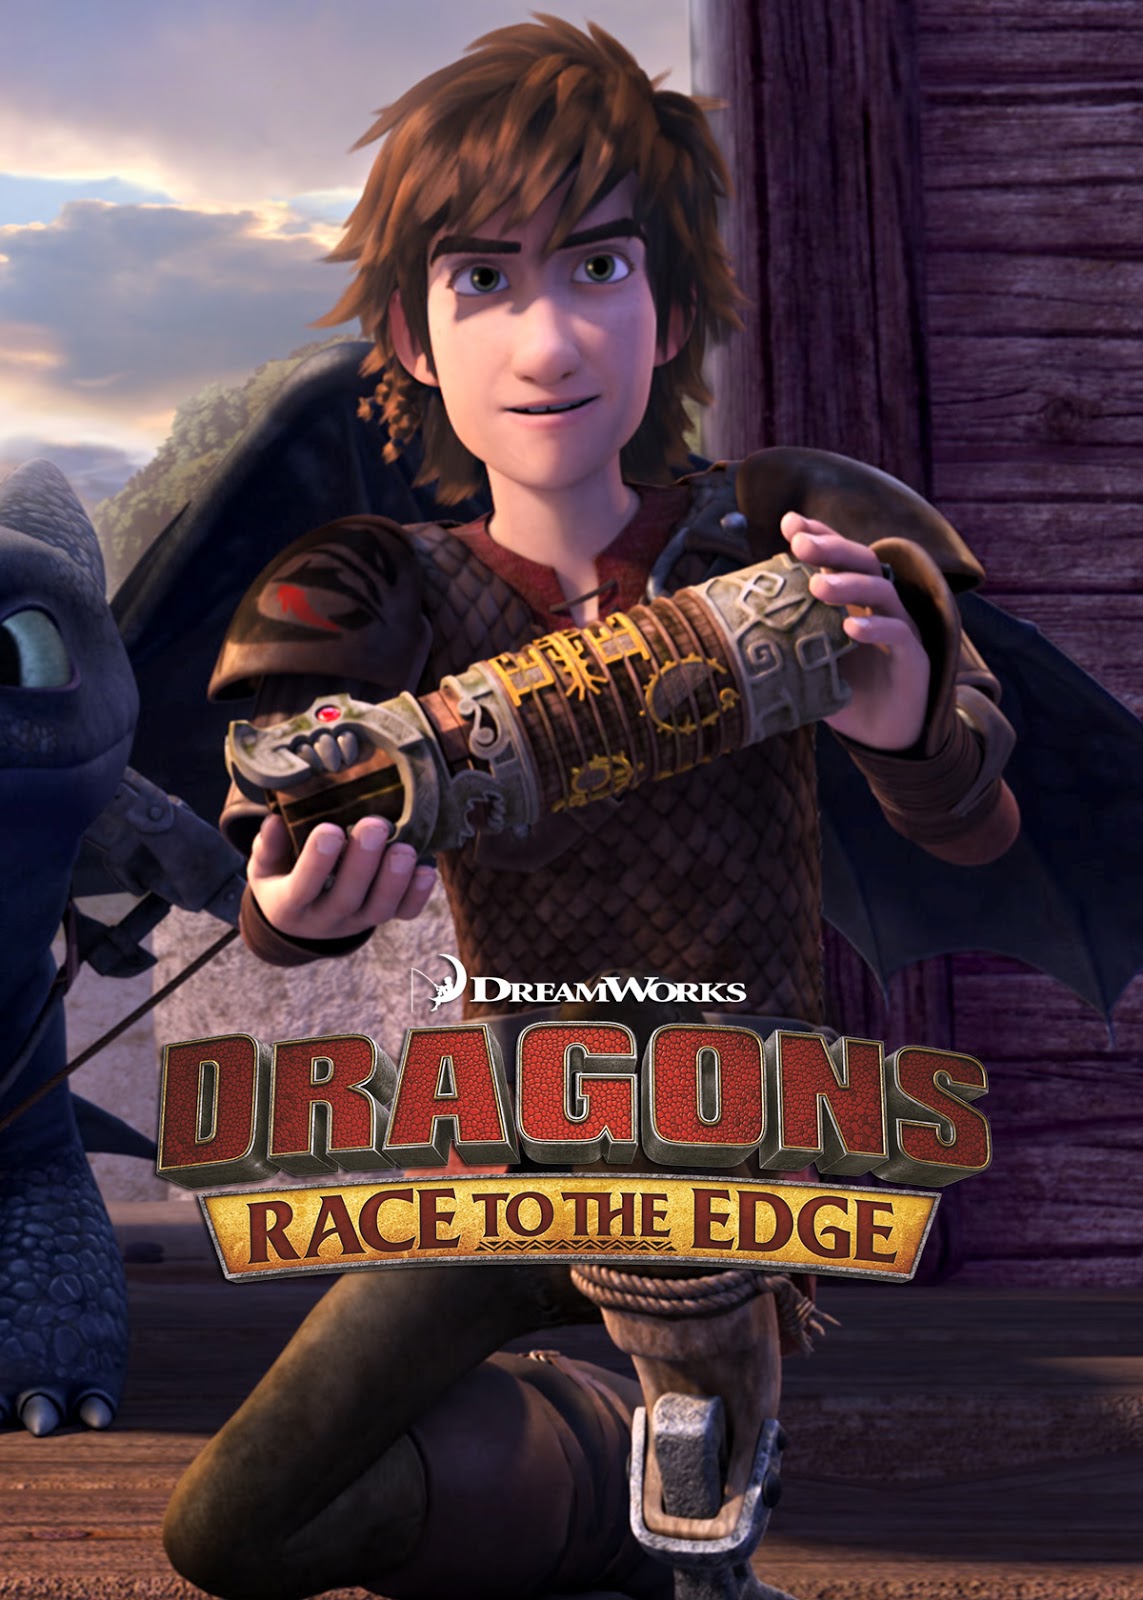 DreamWorks Dragons 2015: Season 3